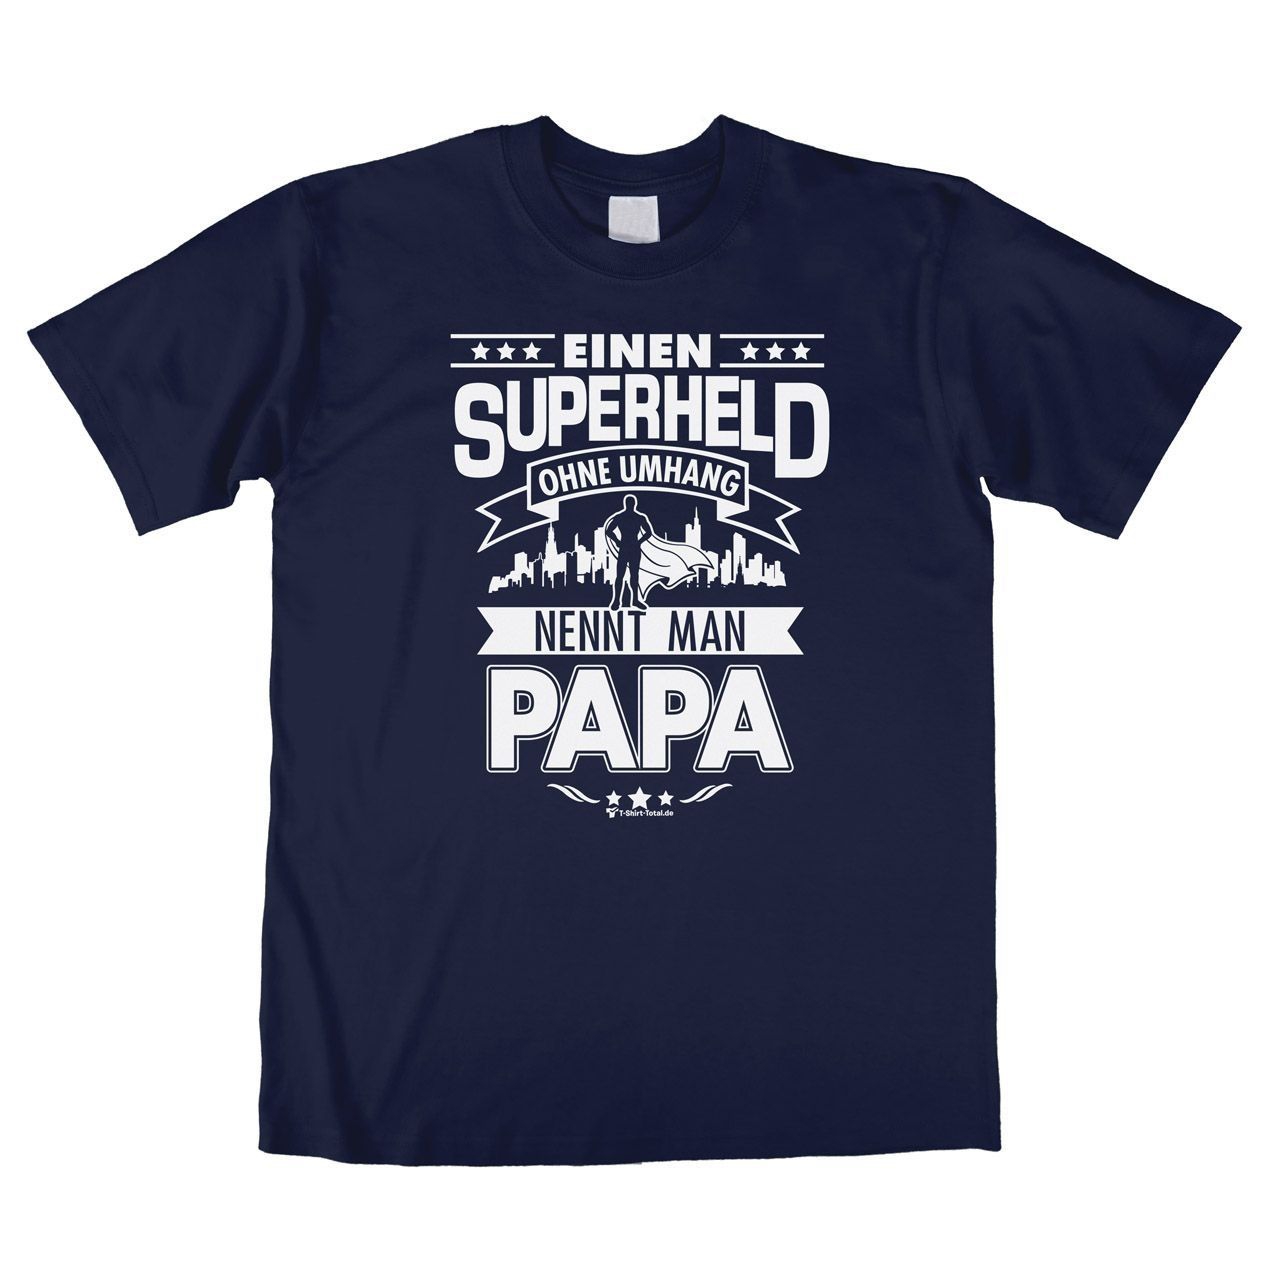 Superheld Papa Unisex T-Shirt navy Large